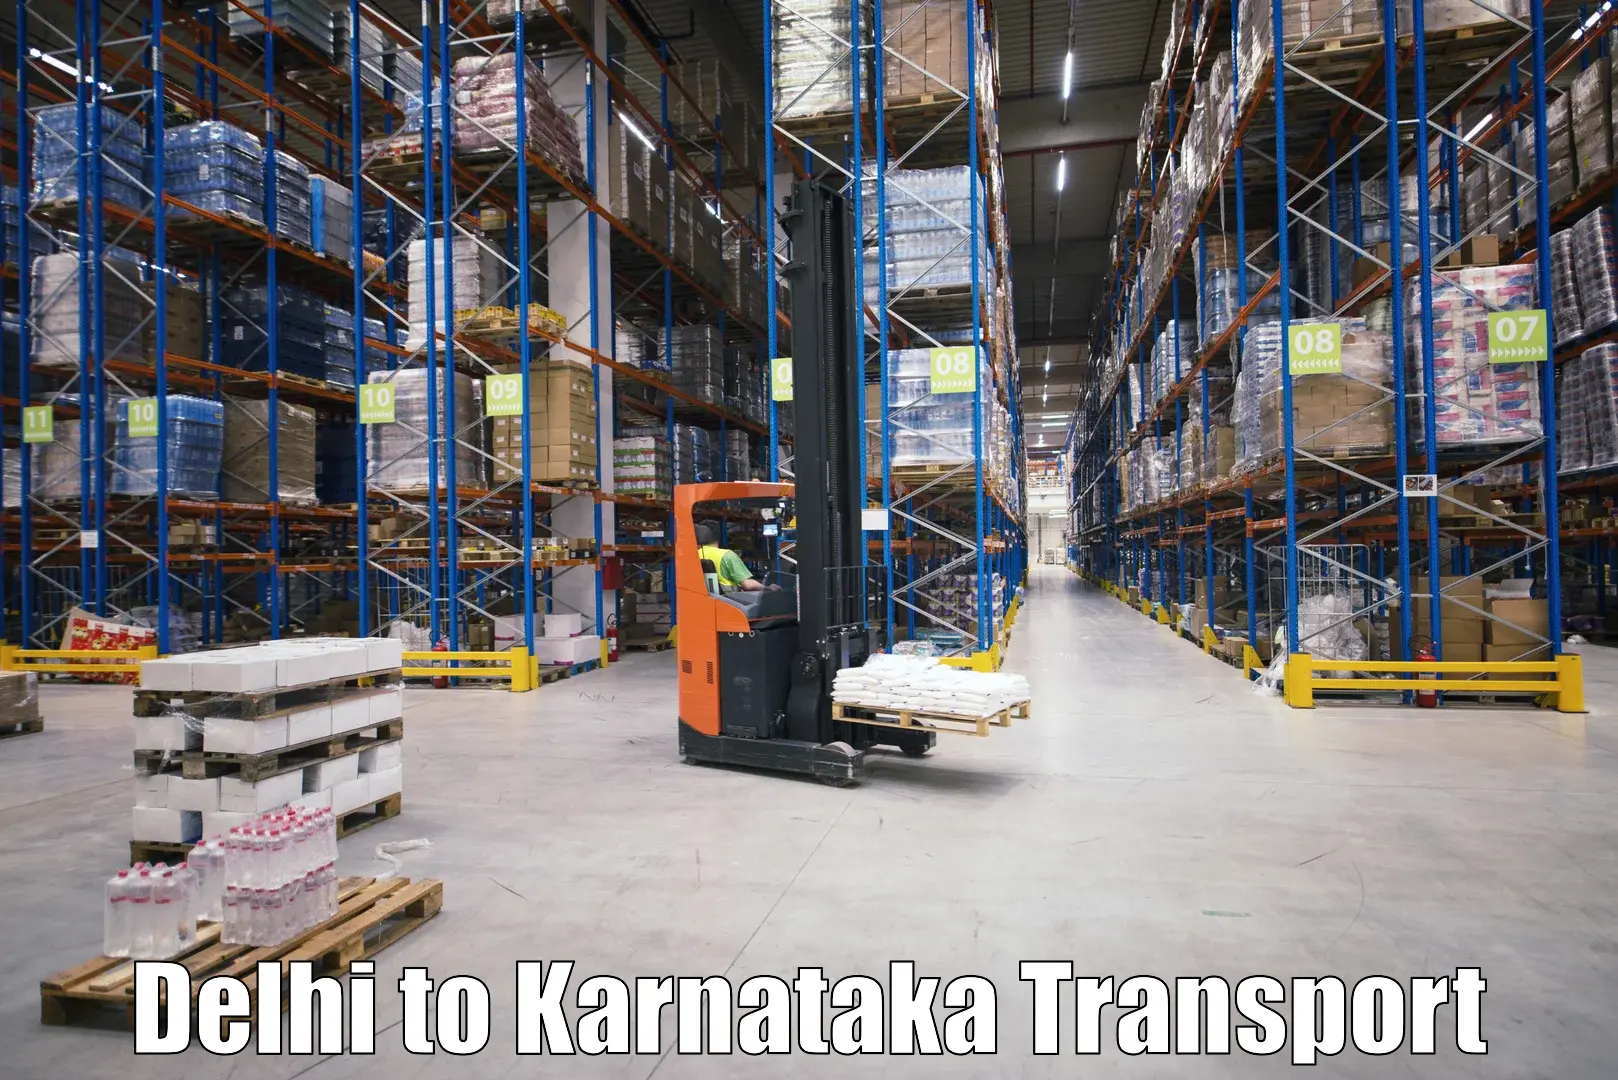 India truck logistics services Delhi to Channagiri